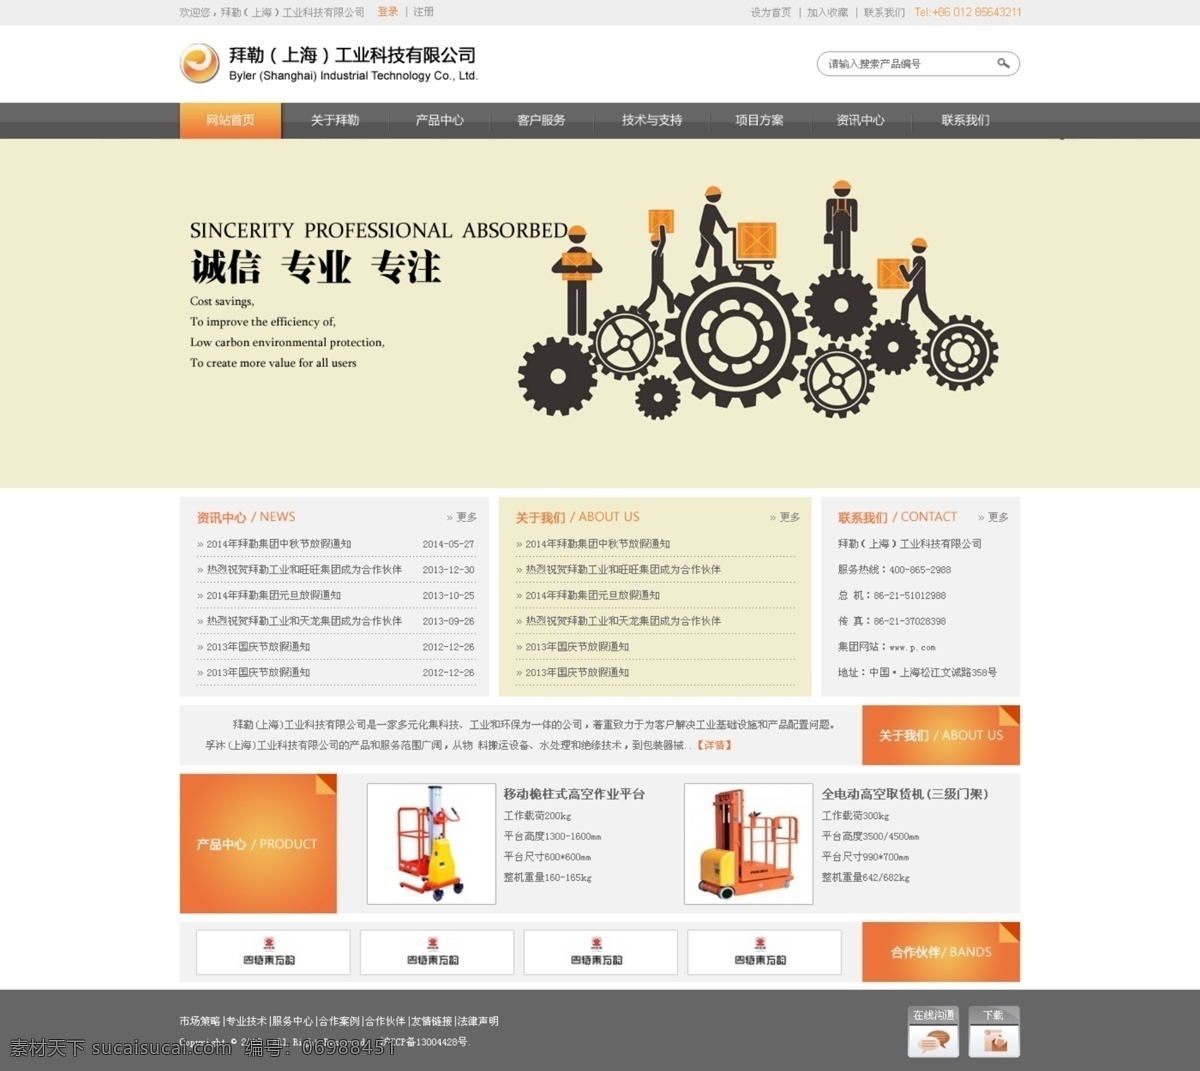 工业 企业网站 模版 企业 网页设计 源文件 中文模板 工业网站 web 界面设计 网页素材 其他网页素材